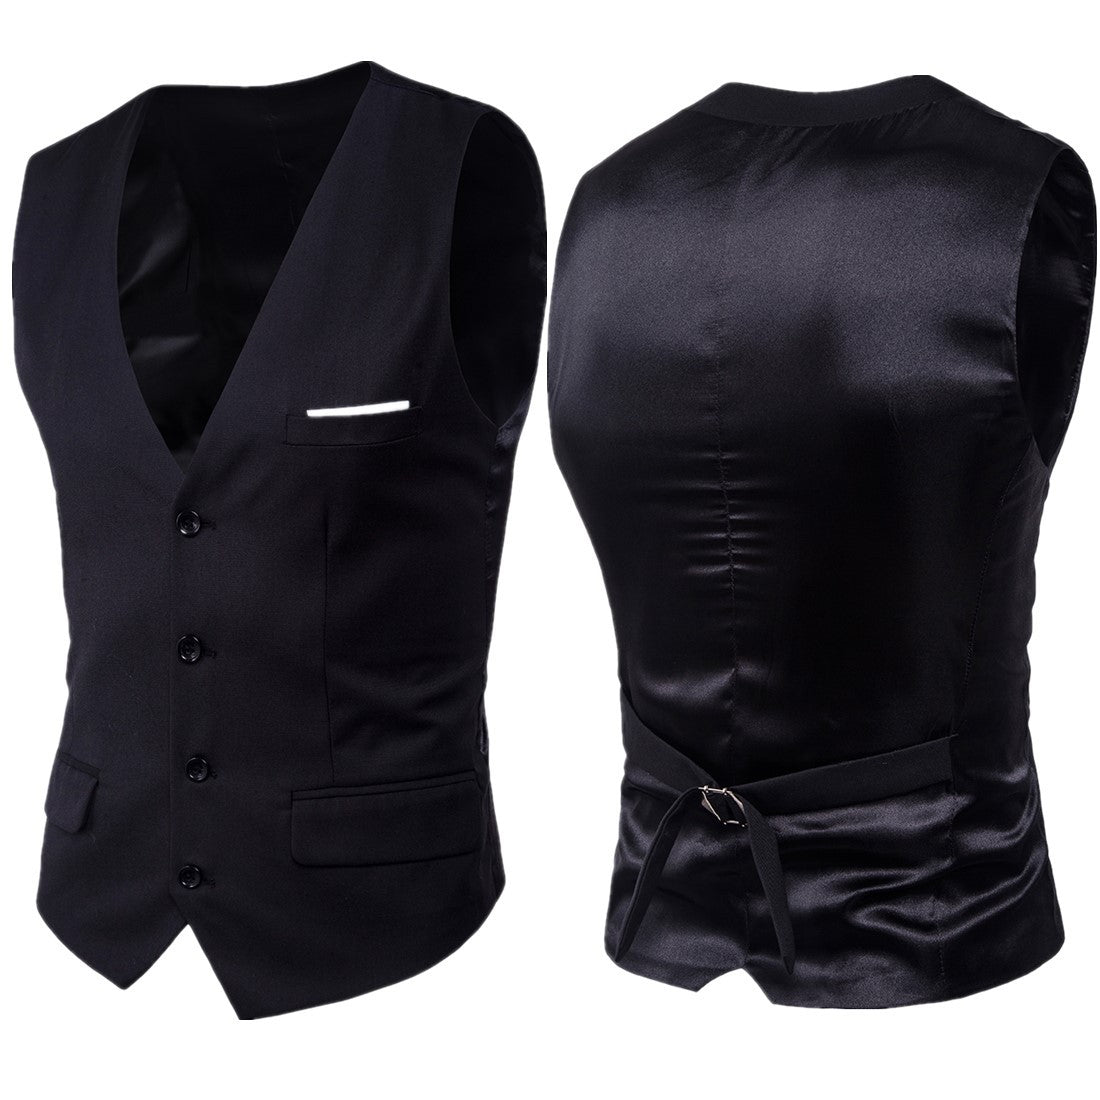 Men's Vest Solid Colored Men's Suit - V Neck / Sleeveless / Spring / Sleeveless